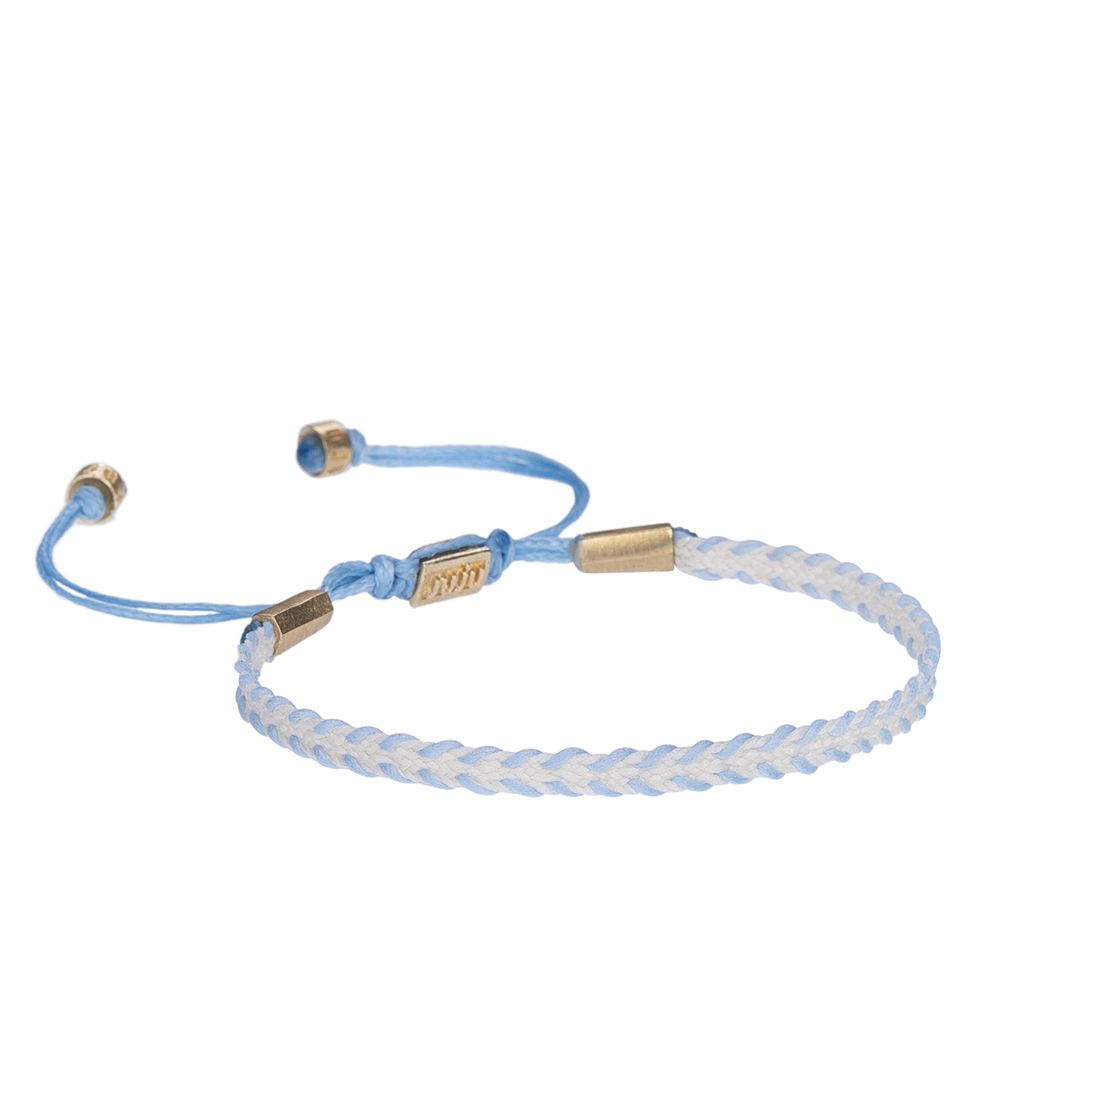 White&Blue Whimsy Slim Cord Bracelet